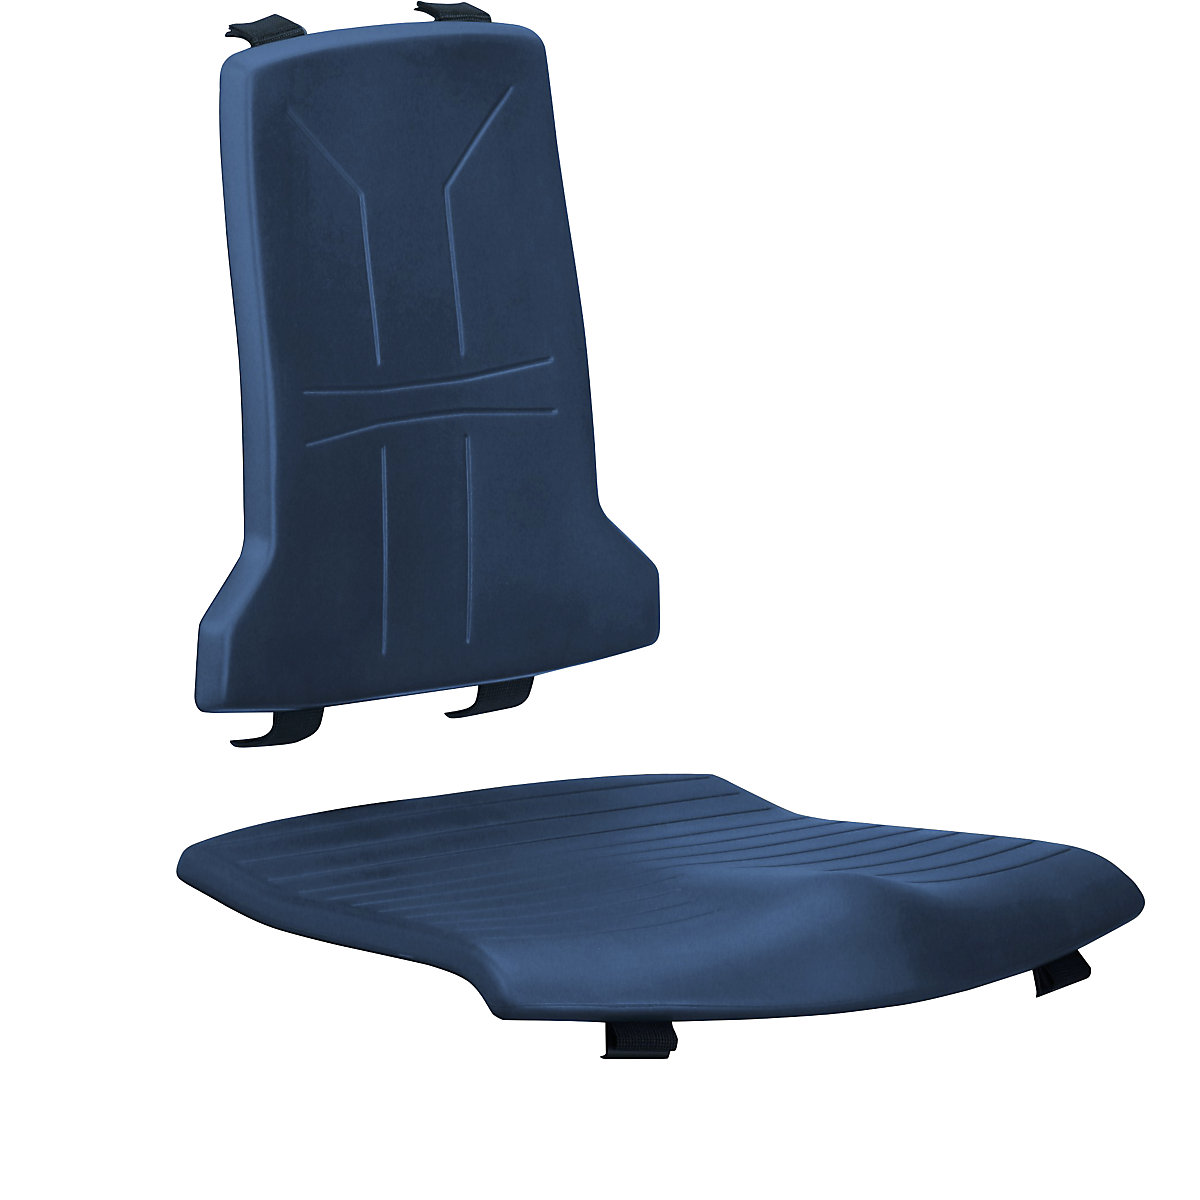 Polster bimos, Standard-Ausführung, je 1 Polster für Sitz und Rückenlehne, PU-Schaum-Polster, blau-2